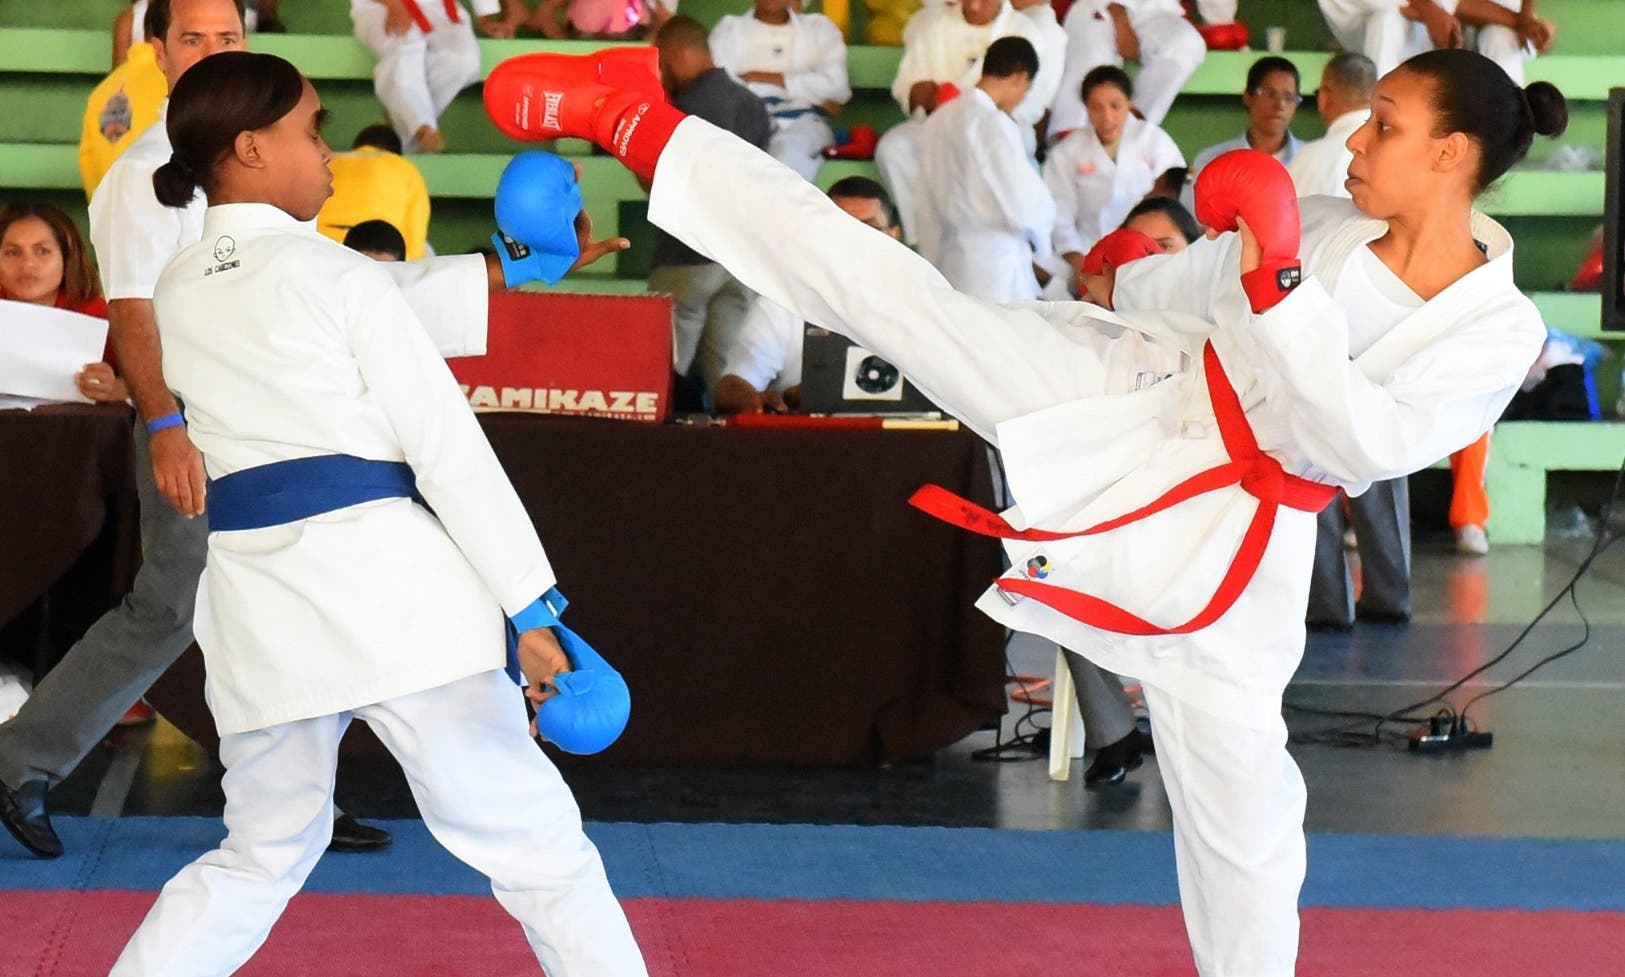 La acción corresponde a uno de los combates celebrados ayer en el torneo de taekwondo de los Juegos Nacionales Escolares.